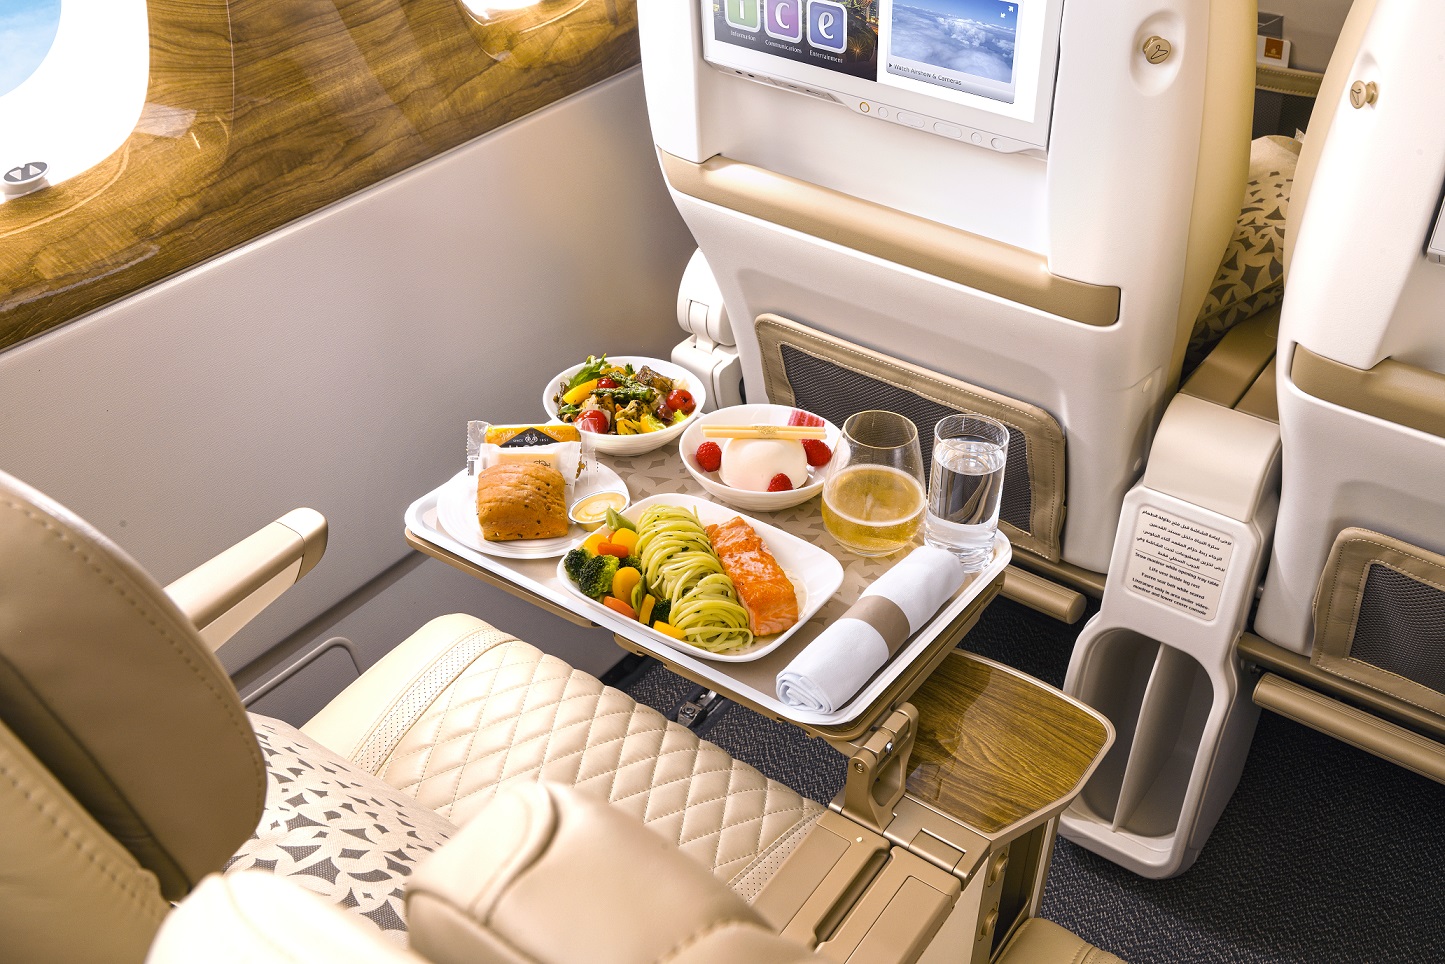 阿联酋航空在豪华经济舱供应年份起泡酒 邀乘客在四万英尺高空举杯共饮